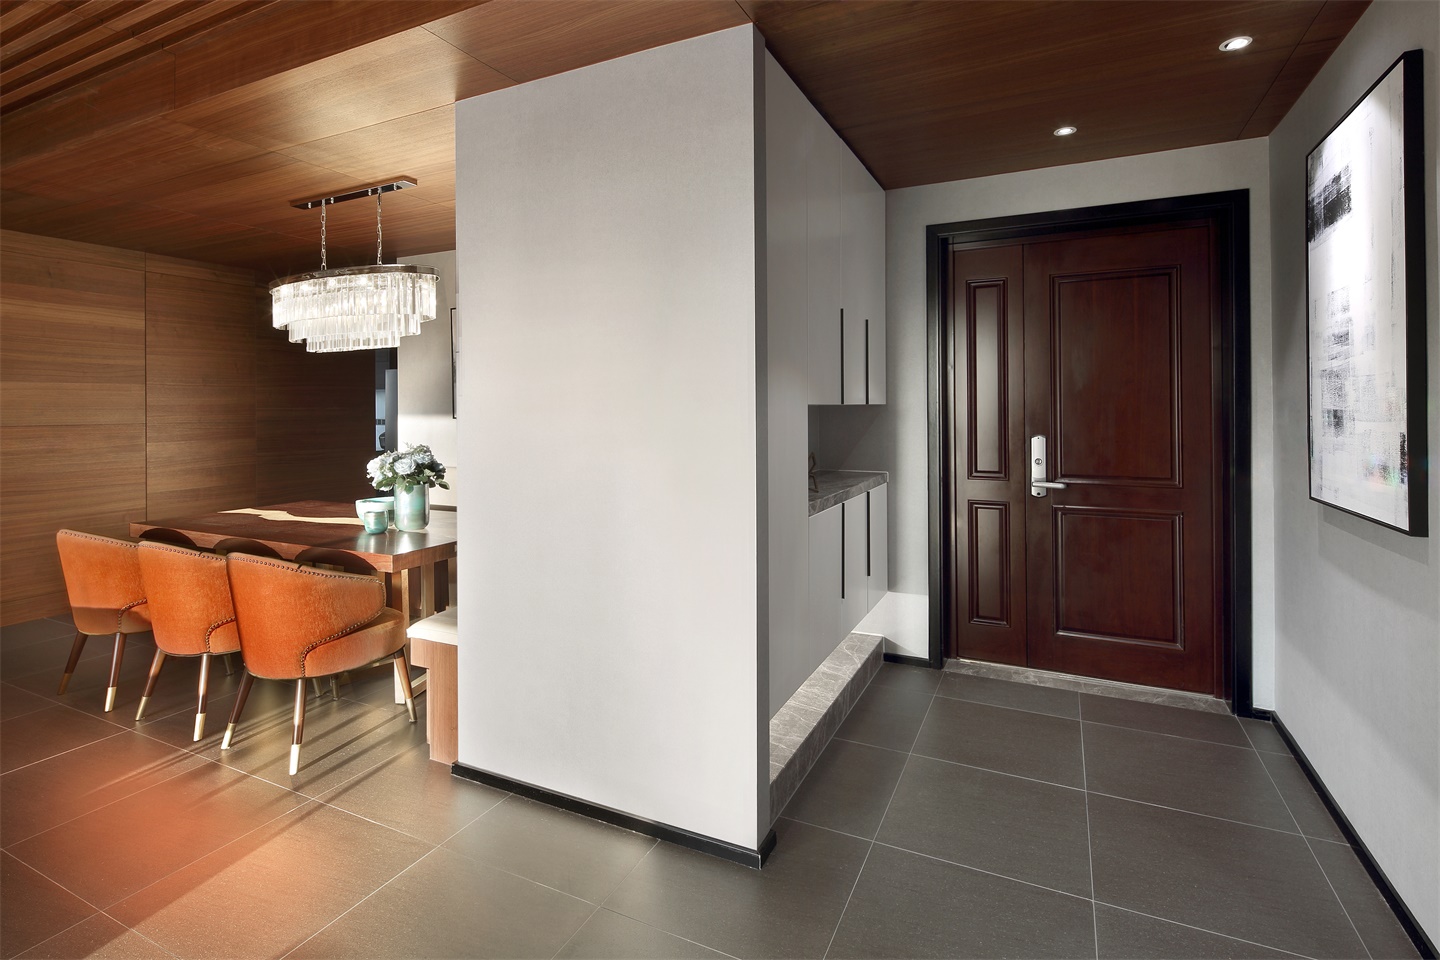 玄关处增加净色储物柜，提升空间美感之余巧妙作为空间隔断，有效增加空间舒适度。